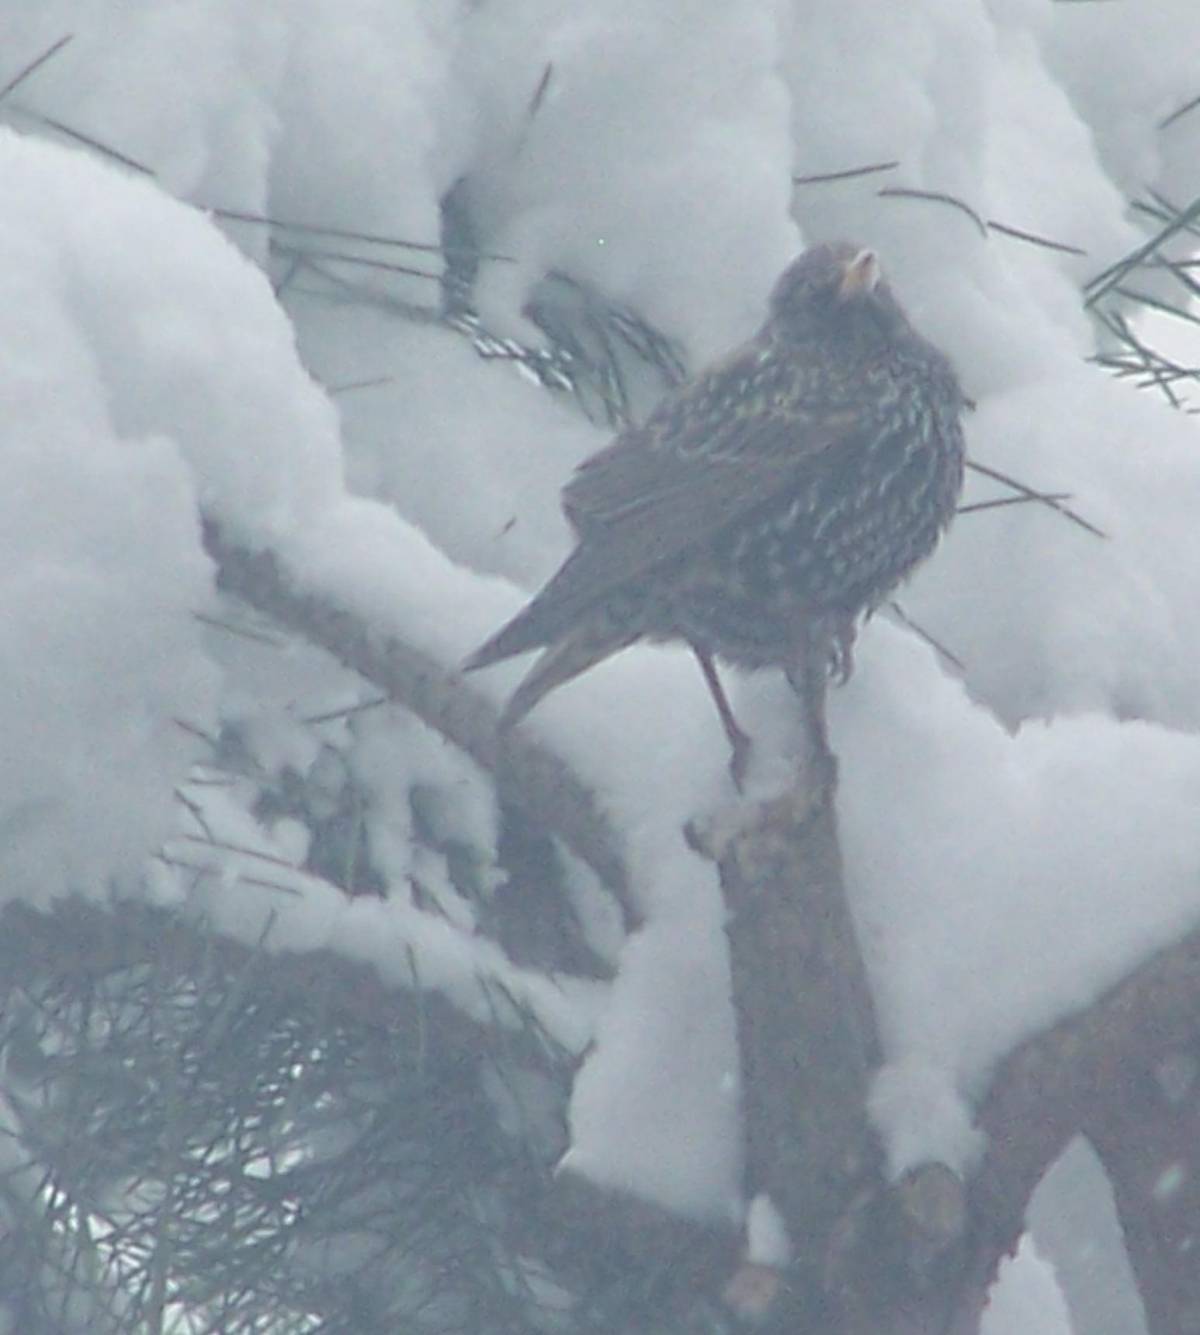 Uccelli sotto la neve: l’Enpa lancia l’appello per il cibo